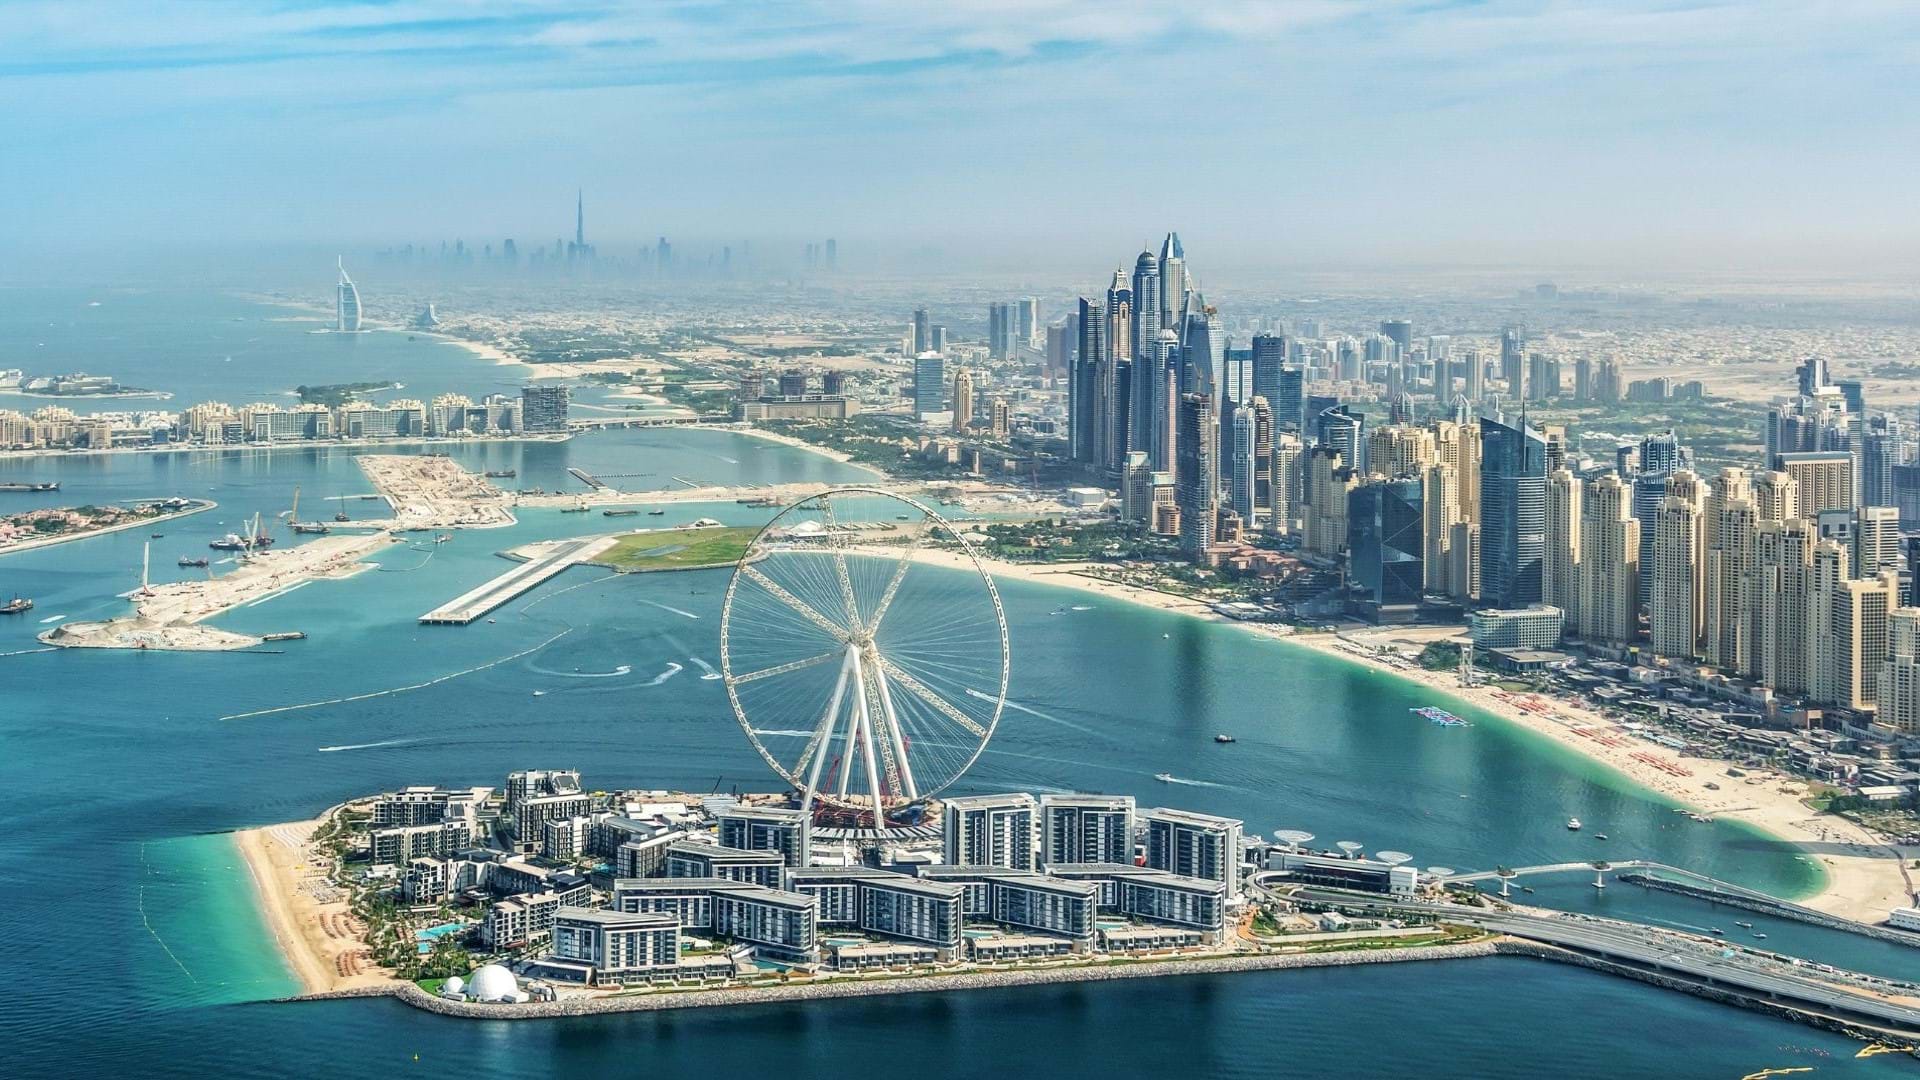 Dubai putovanje - obala, panorama, neboderi i lusksuzni hoteli